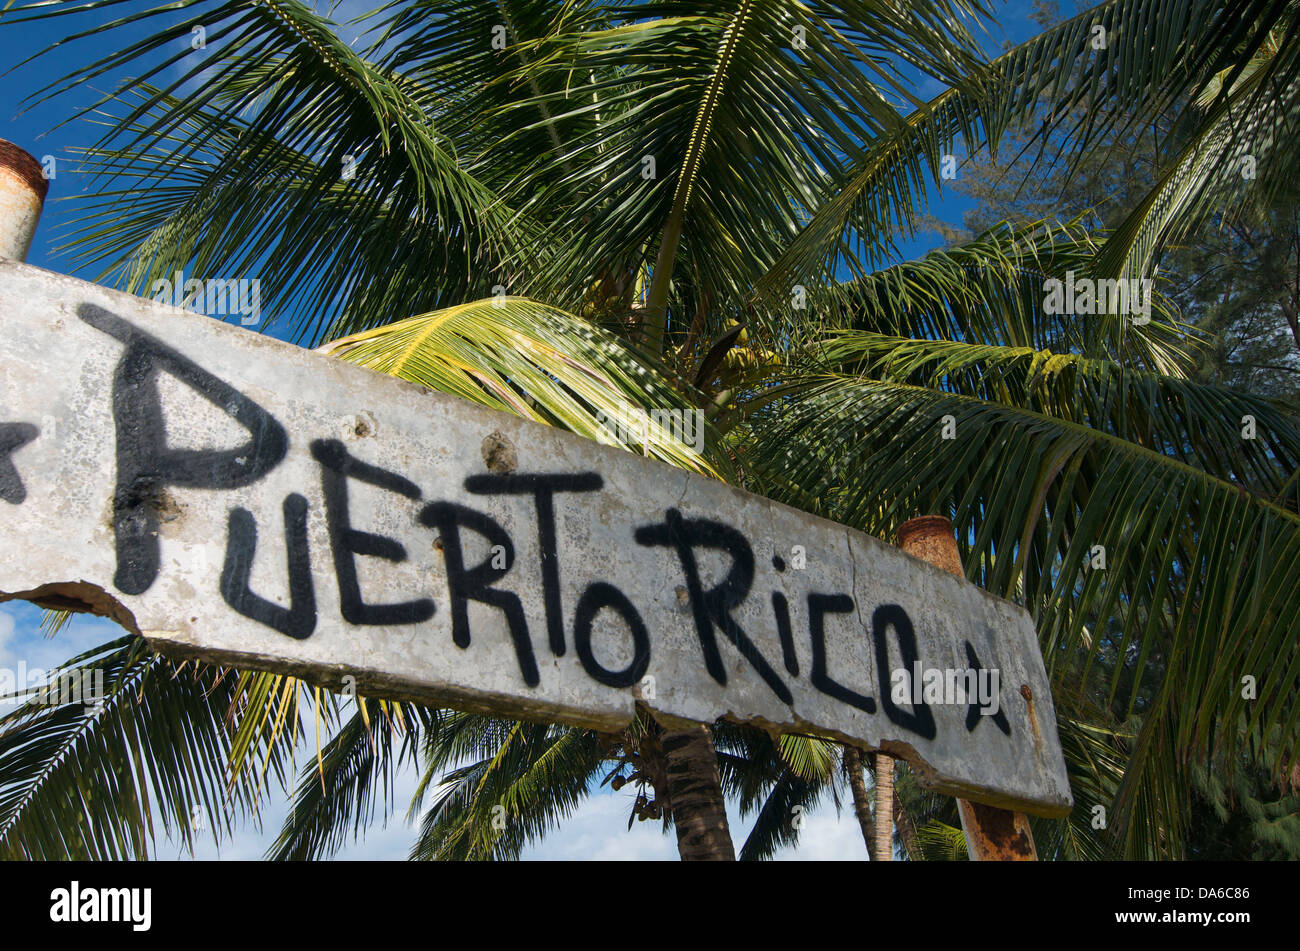 Puerto Rico, Caribbean, Greater Antilles, Antilles, Luquillo, palm beach, palm beaches, sand beach, sand beaches, beach, seashor Stock Photo